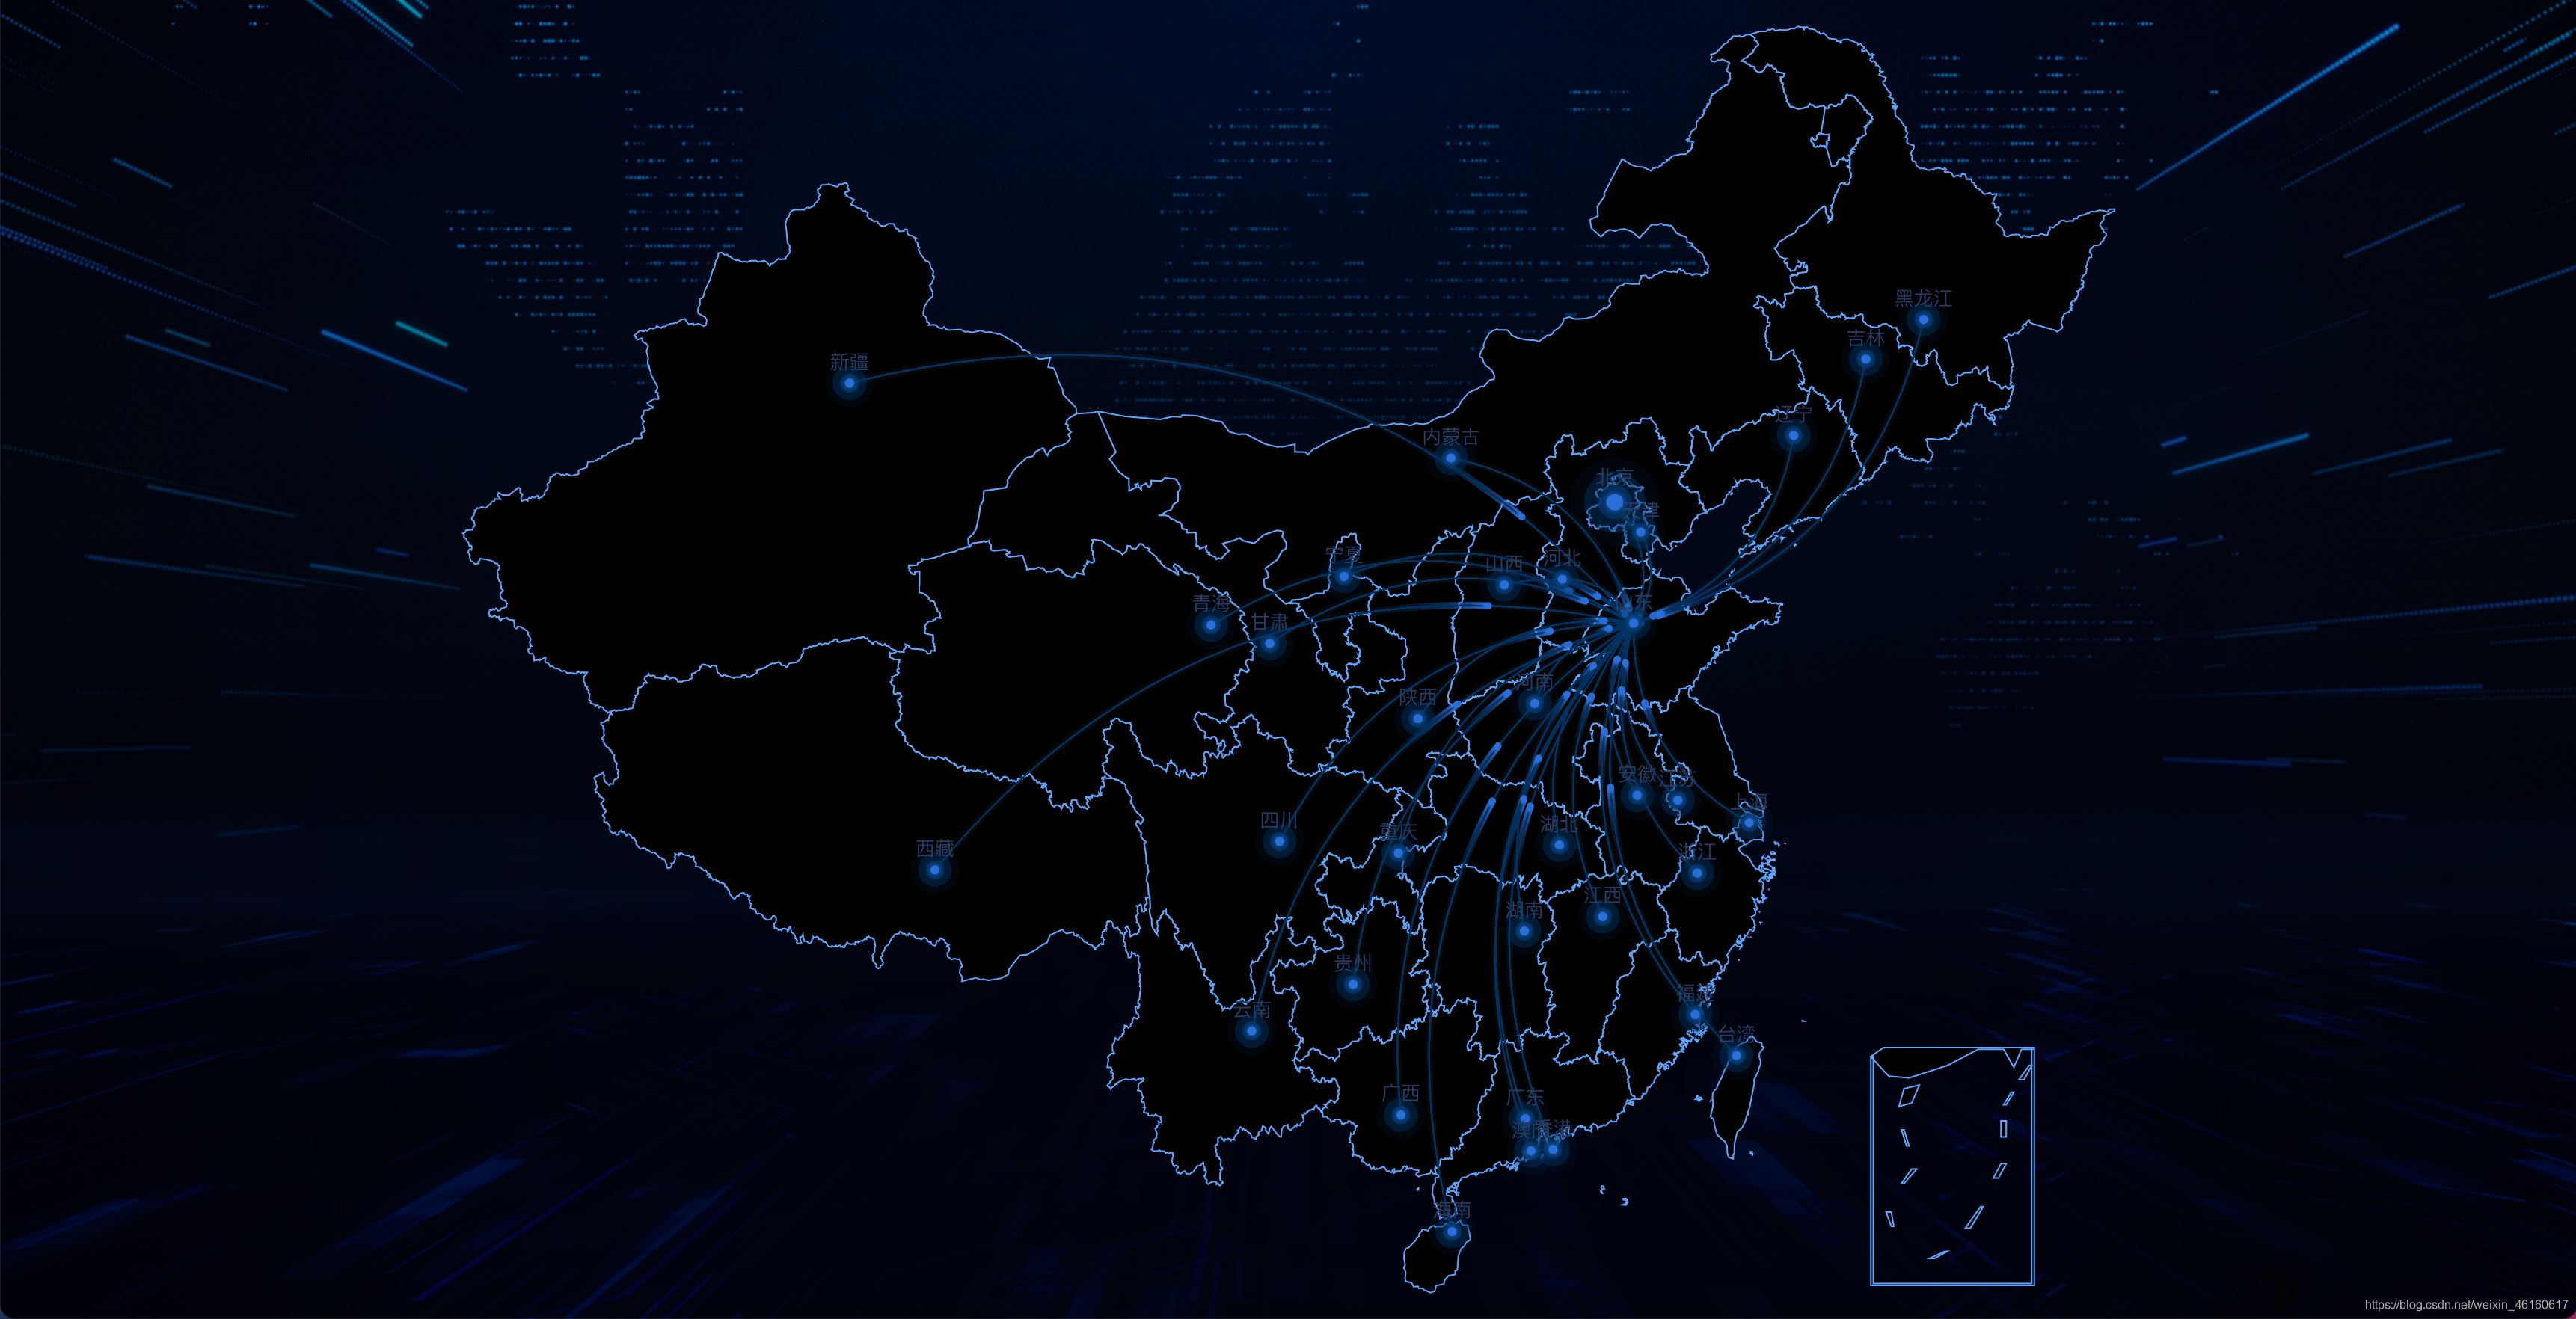 vue+echarts实现中国地图流动效果(步骤详解)